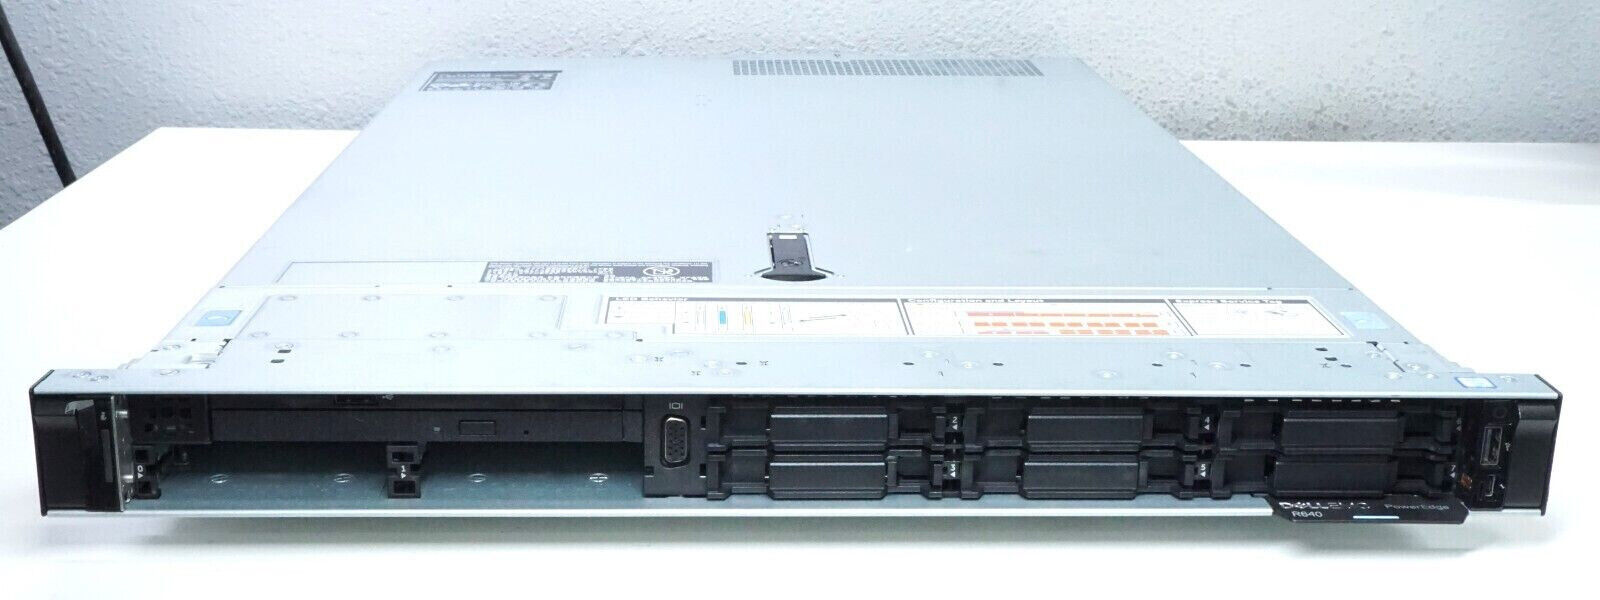 DELL EMC POWEREDGE R640 2 X HS H730P RAID RAILS DUAL PSU CTO SERVER